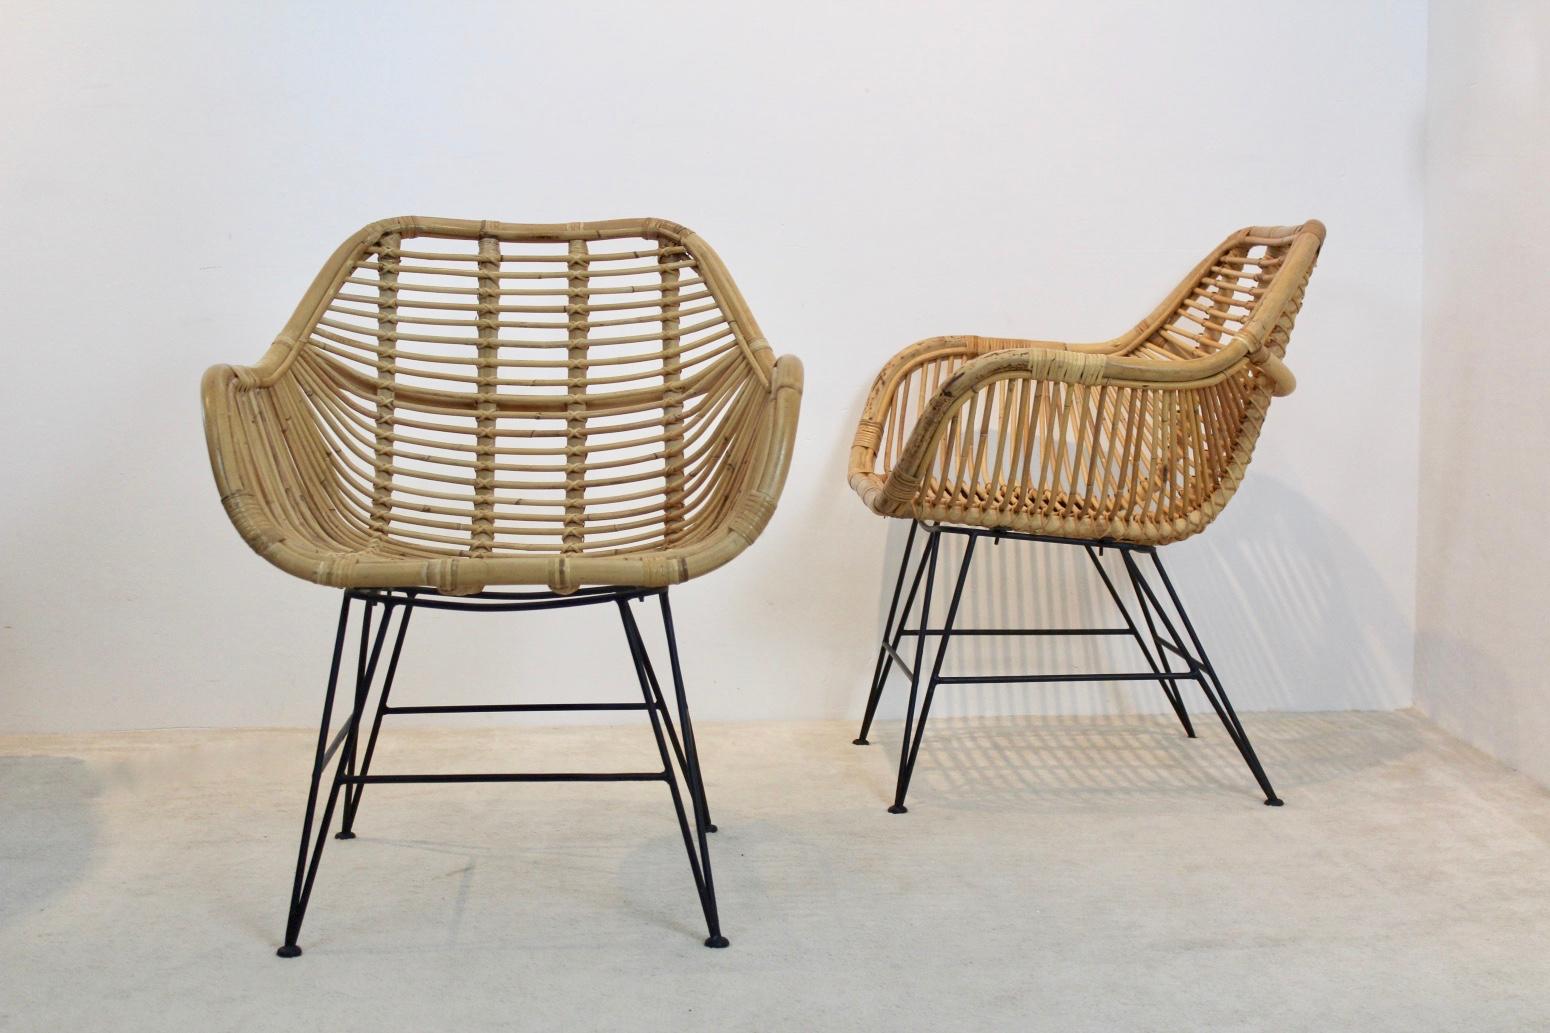 Bel ensemble de deux chaises en osier avec une base en acier sophistiquée, produit aux Pays-Bas. Les chaises sont constituées de rotin magnifiquement conçu avec des détails linéaires dans le style de Franco Albini. Très bon état d'origine.